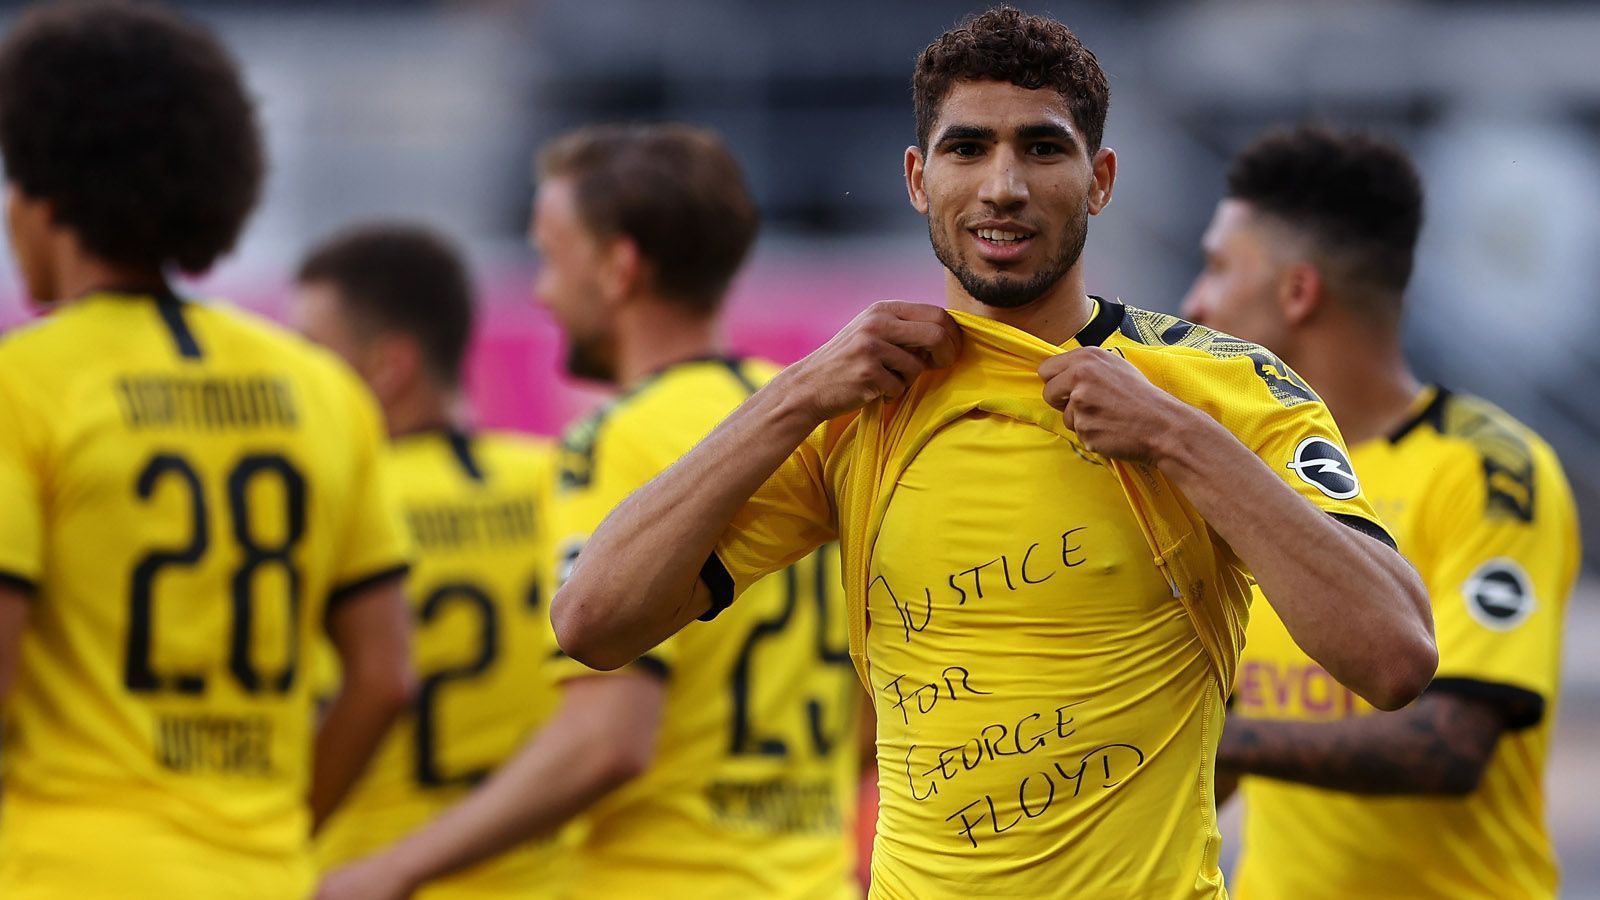 
                <strong>Achraf Hakimi (Borussia Dortmund)</strong><br>
                Achraf Hakimi tat es seinem Teamkameraden gleich. Auch er trug auf seinem Shirt den Namen des Getöteten.
              